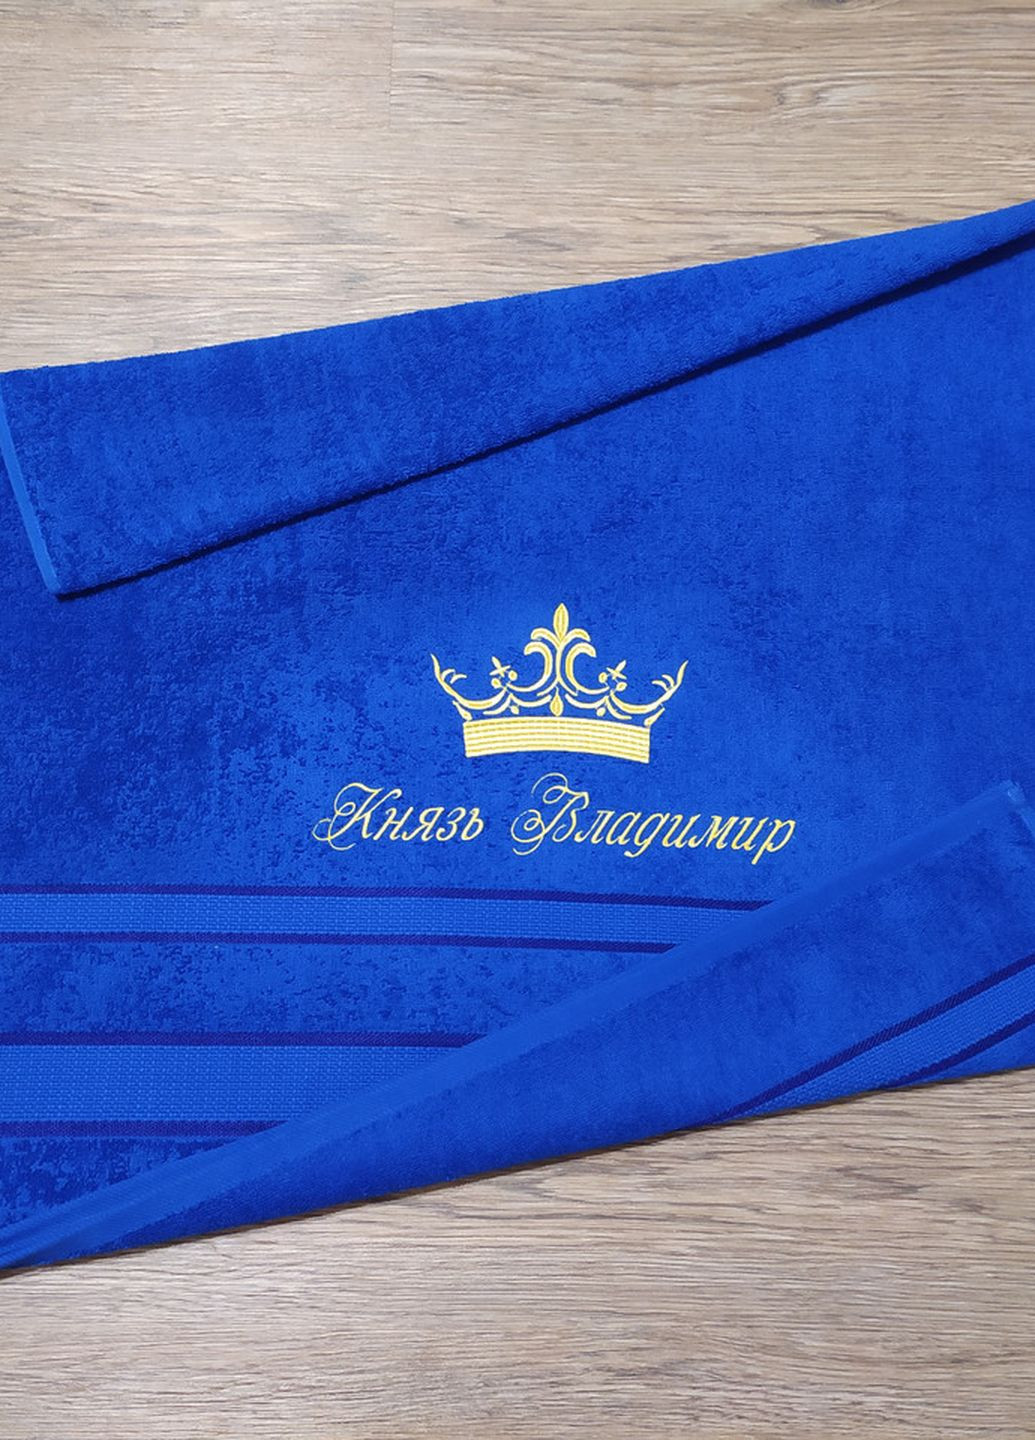 No Brand полотенце с именной вышивкой махровое банное 70*140 синий владимир 00024 однотонный синий производство - Украина